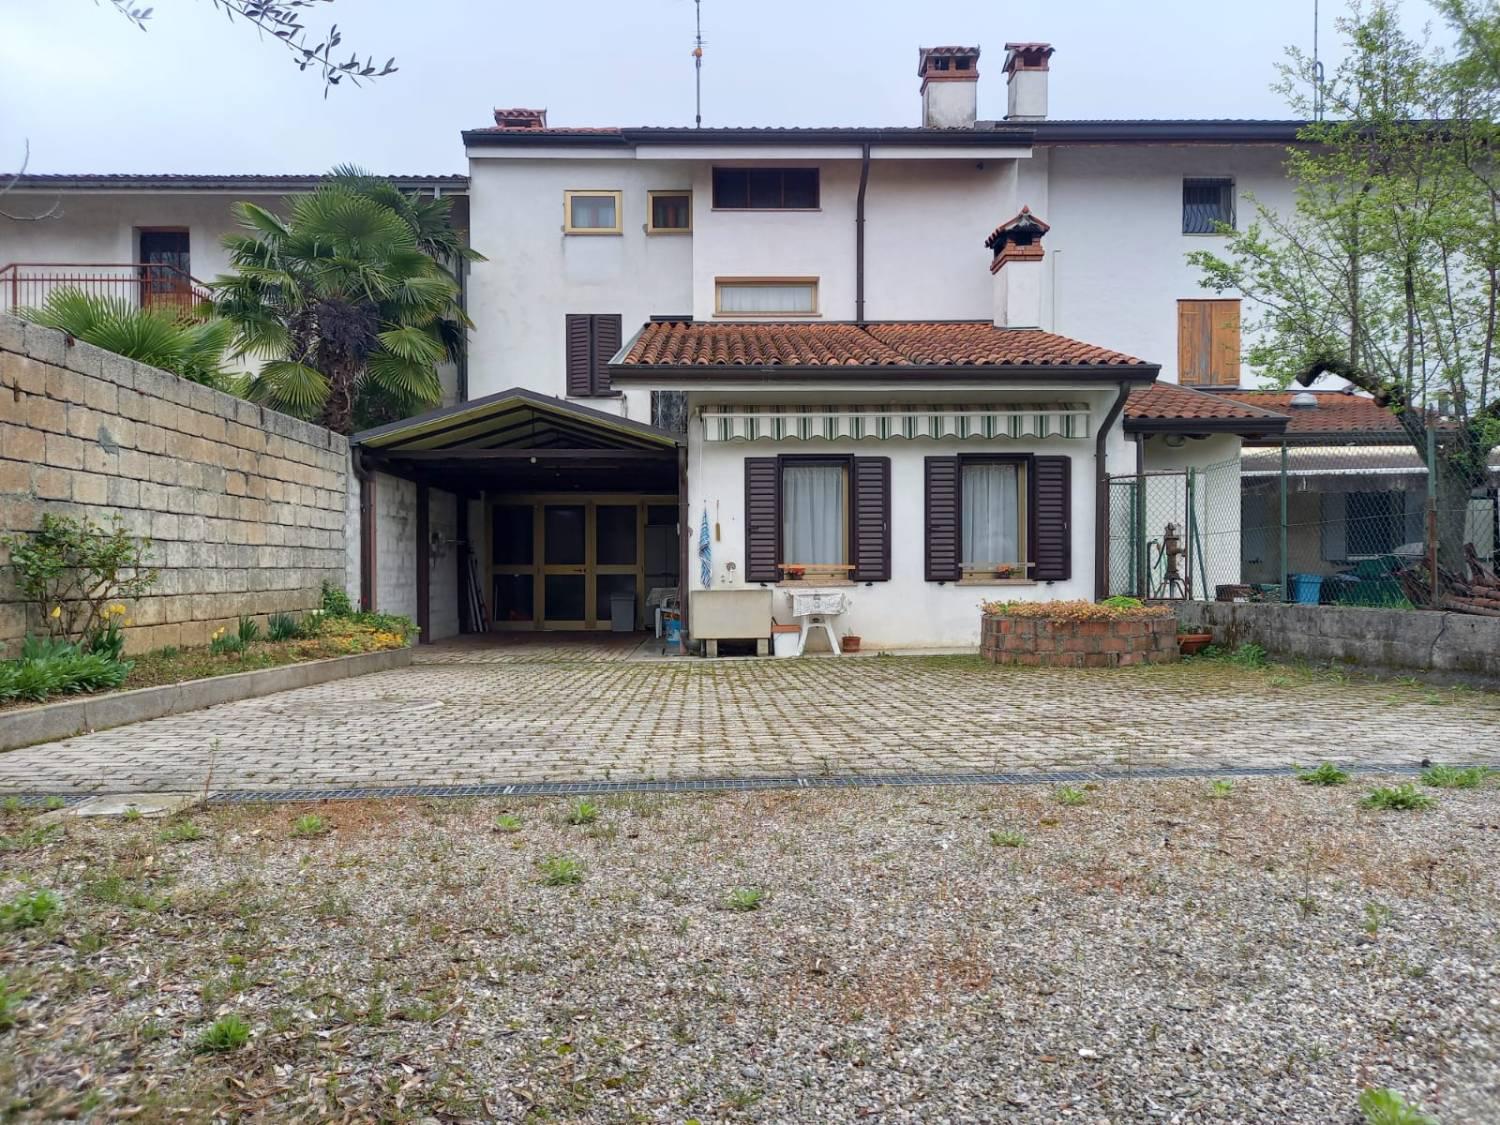 Soluzione Indipendente in vendita a Romans d'Isonzo, 8 locali, prezzo € 157.000 | CambioCasa.it